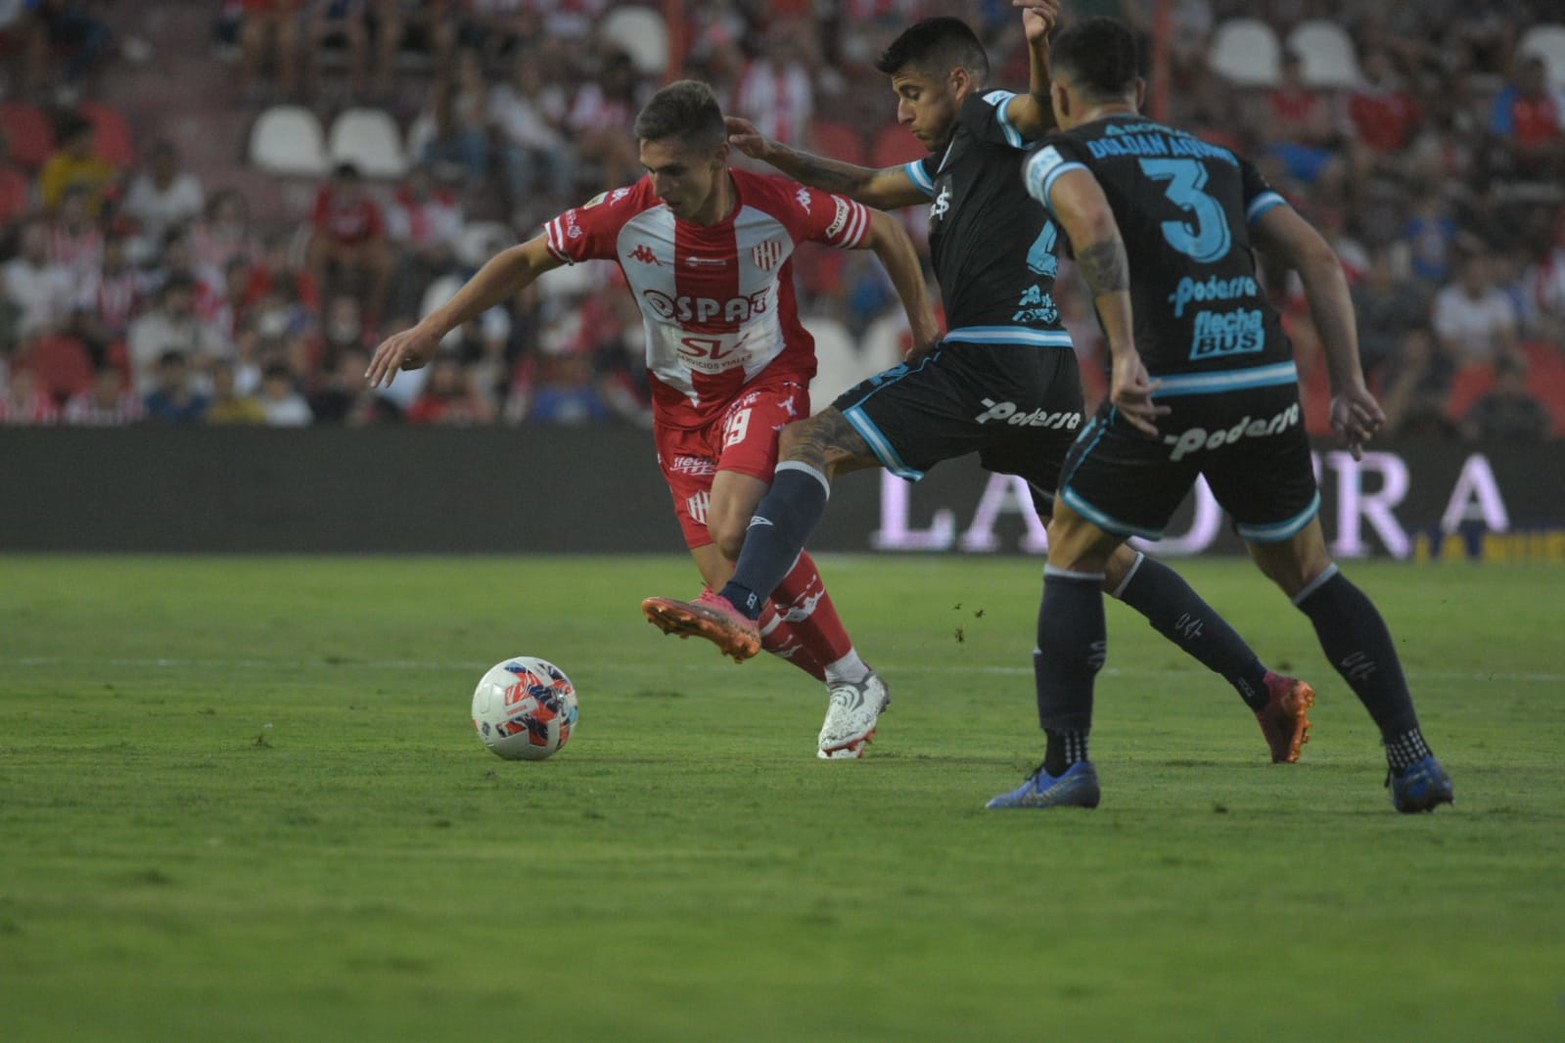 Unión le ganó 1 a 0 a Atlético Tucumán. De 9 puntos en juego cosechó 7.